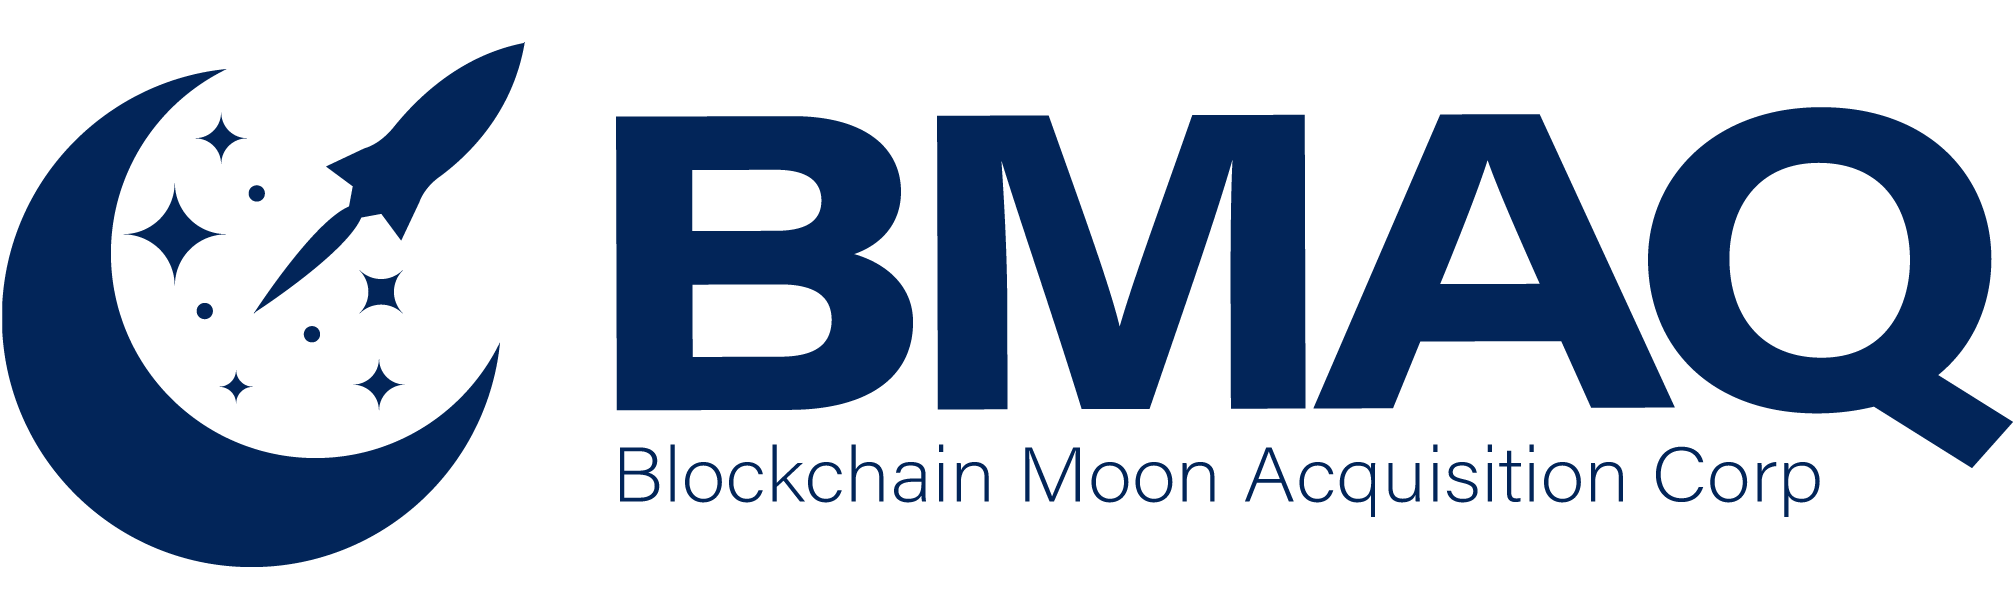 Blockchain Moon Acquisition Corp. Announces Liquidation